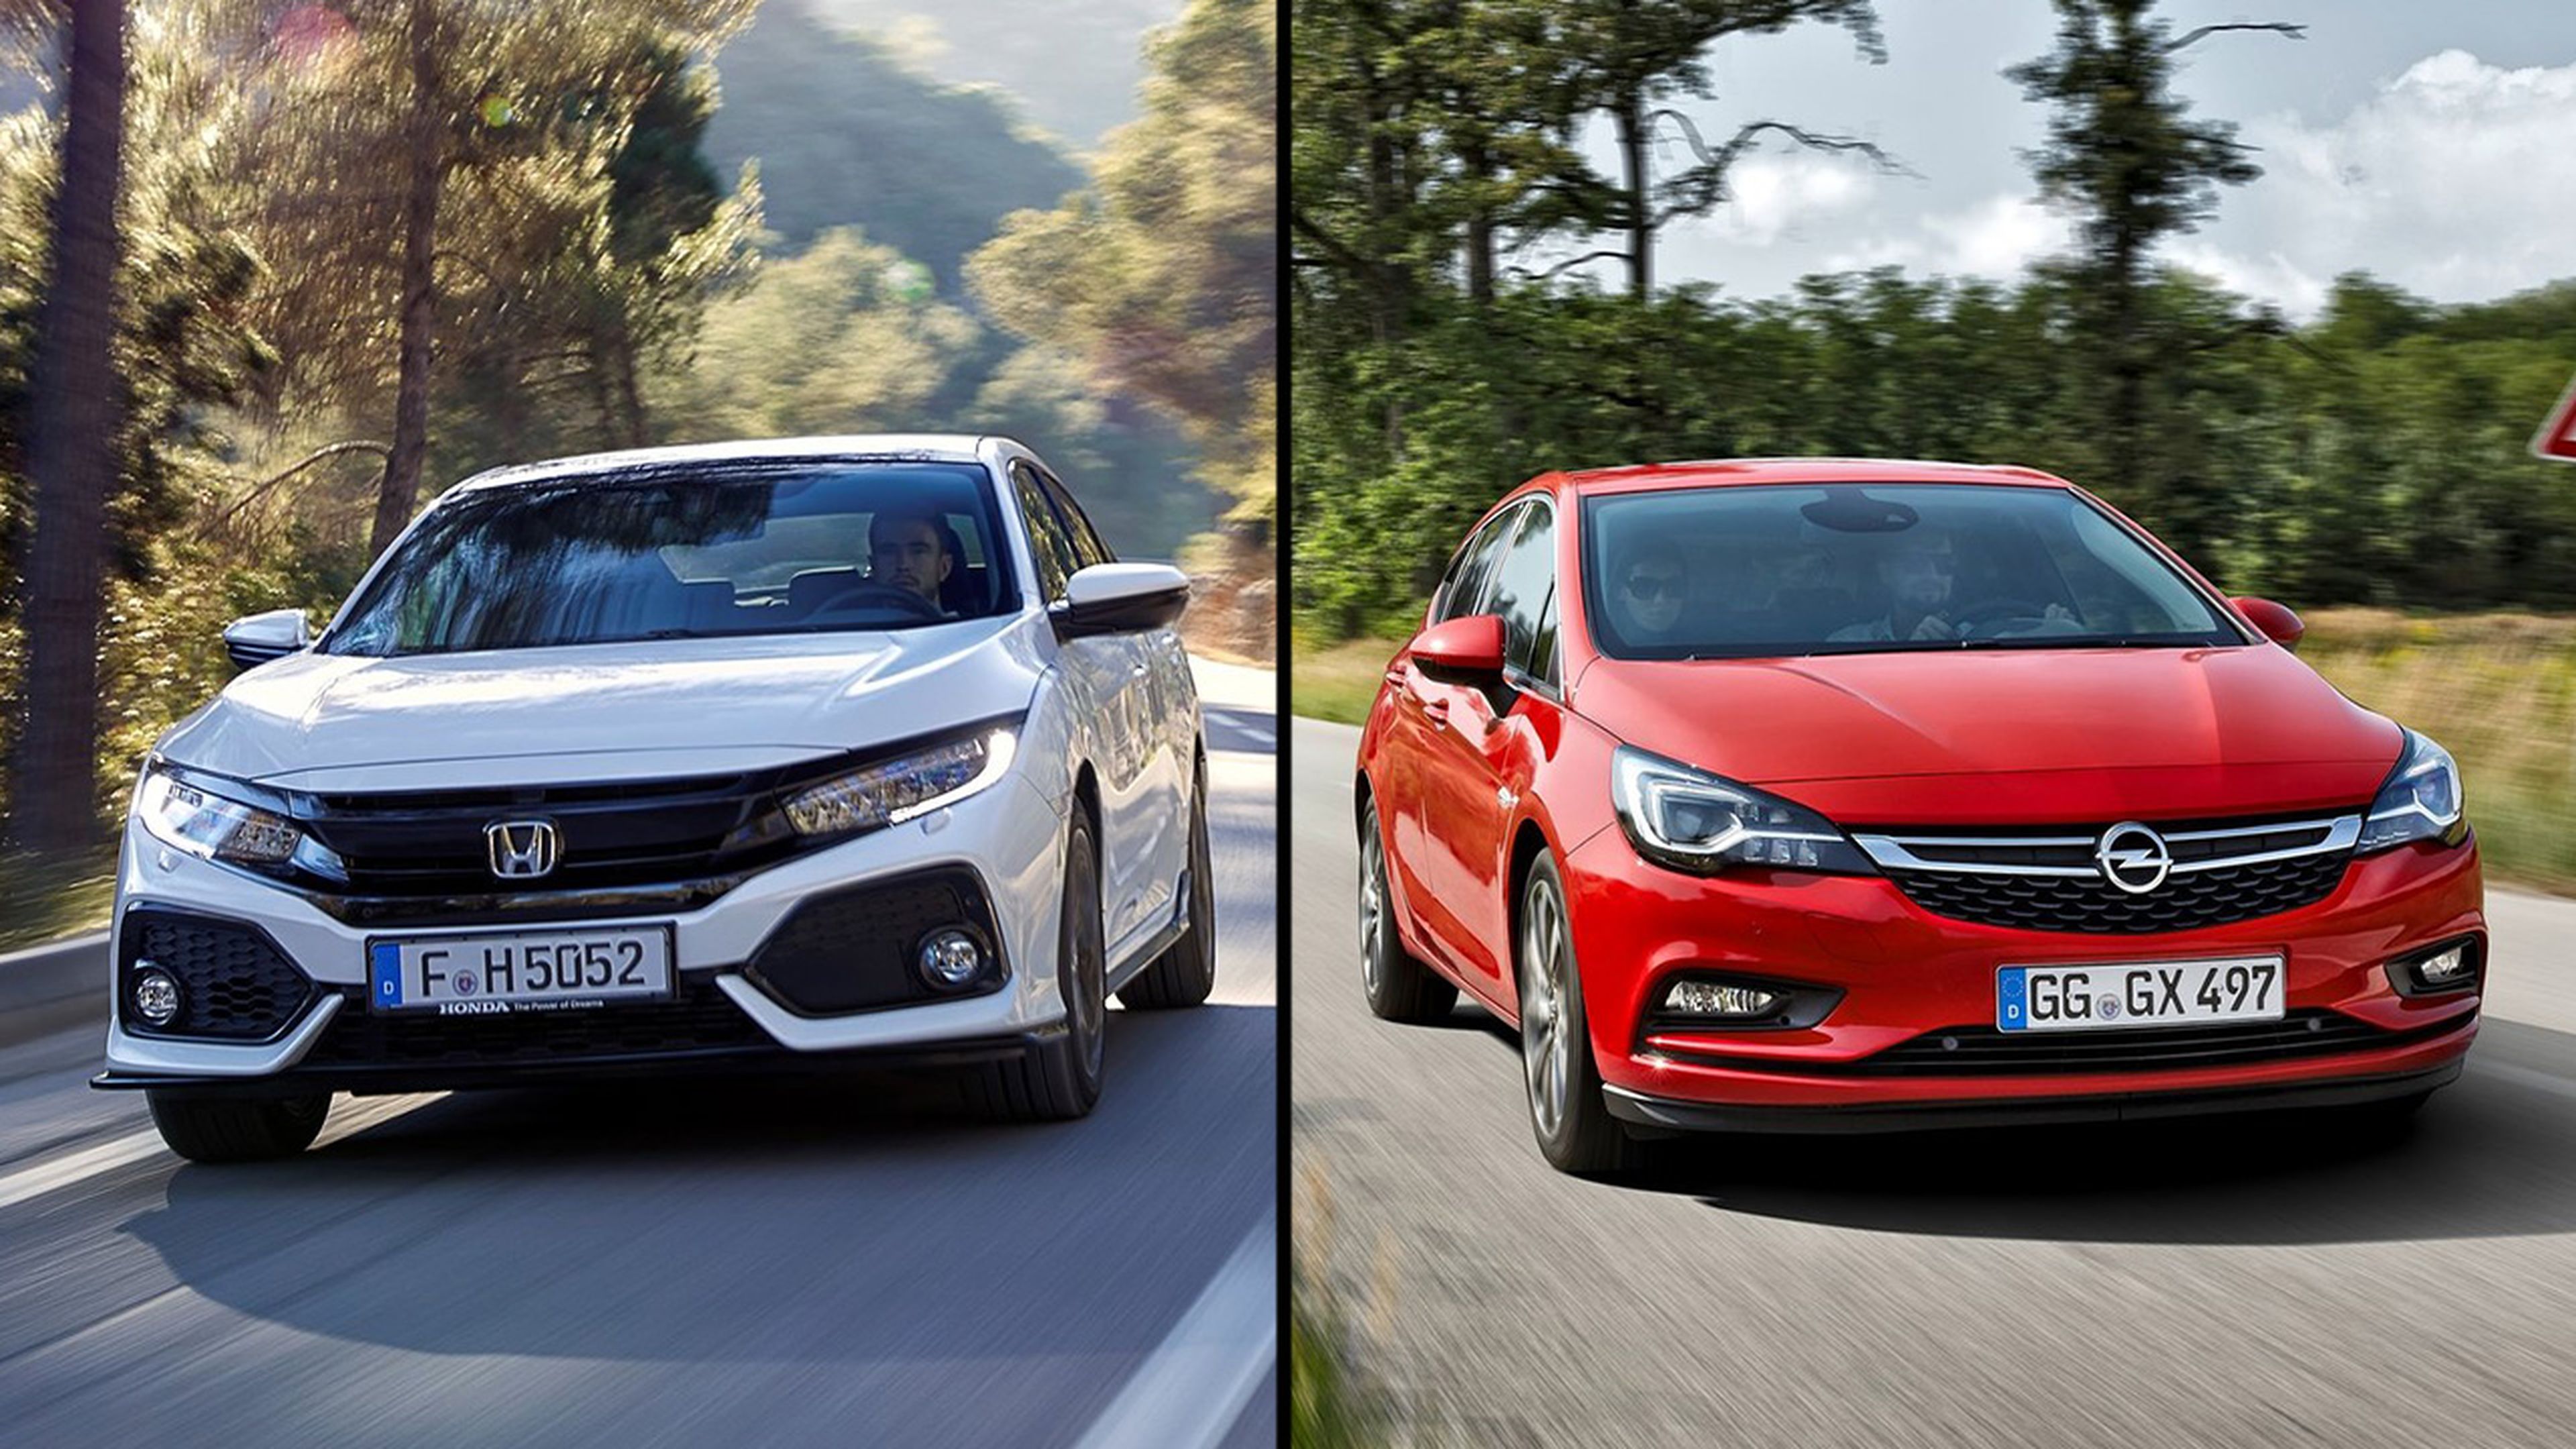 Honda Civic vs Opel Astra